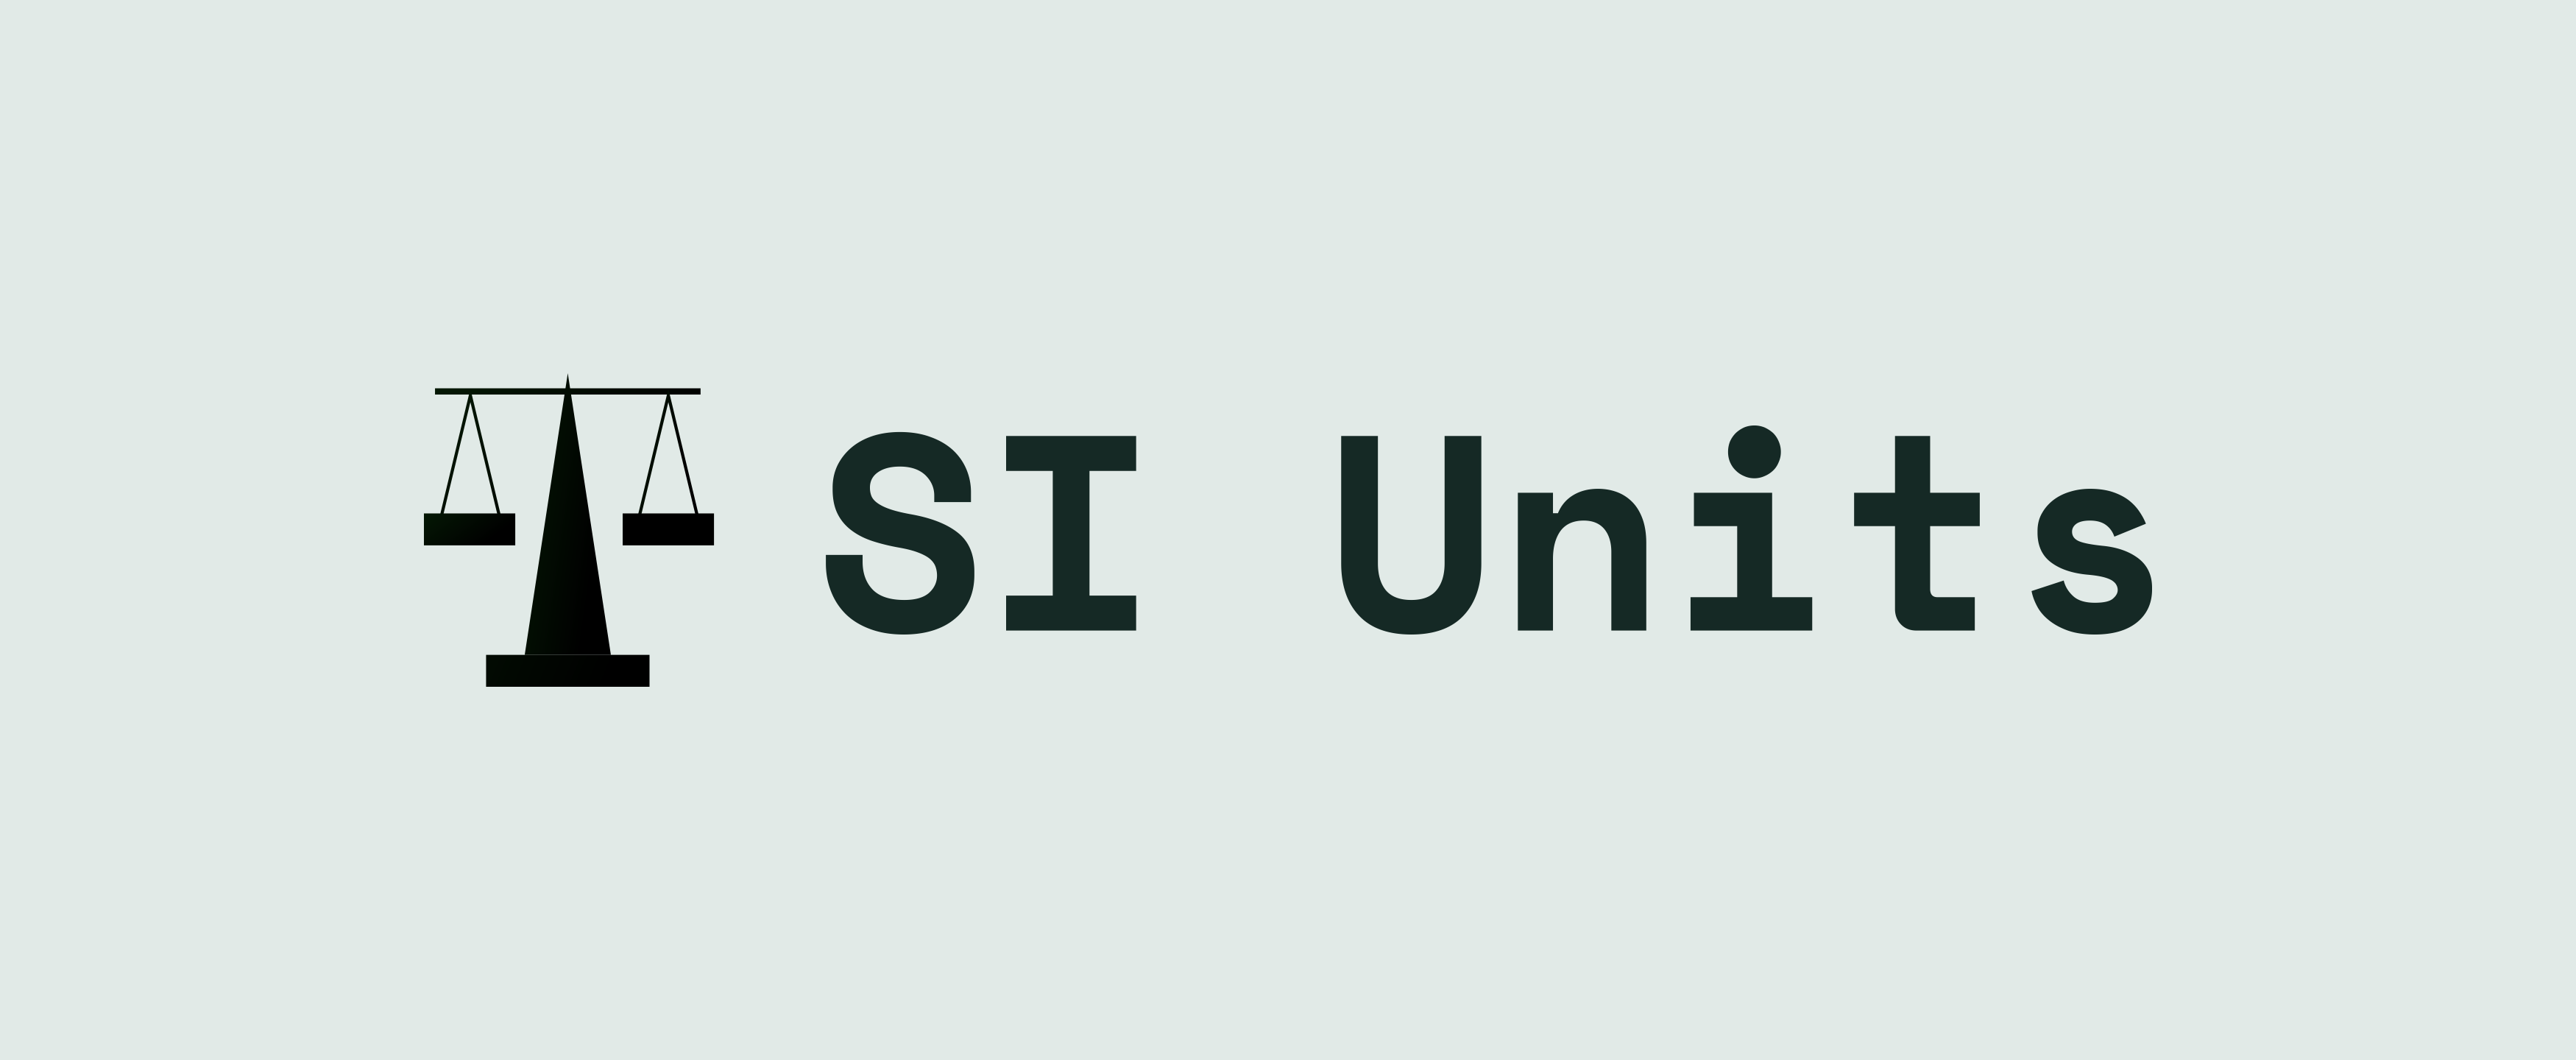 SI Units